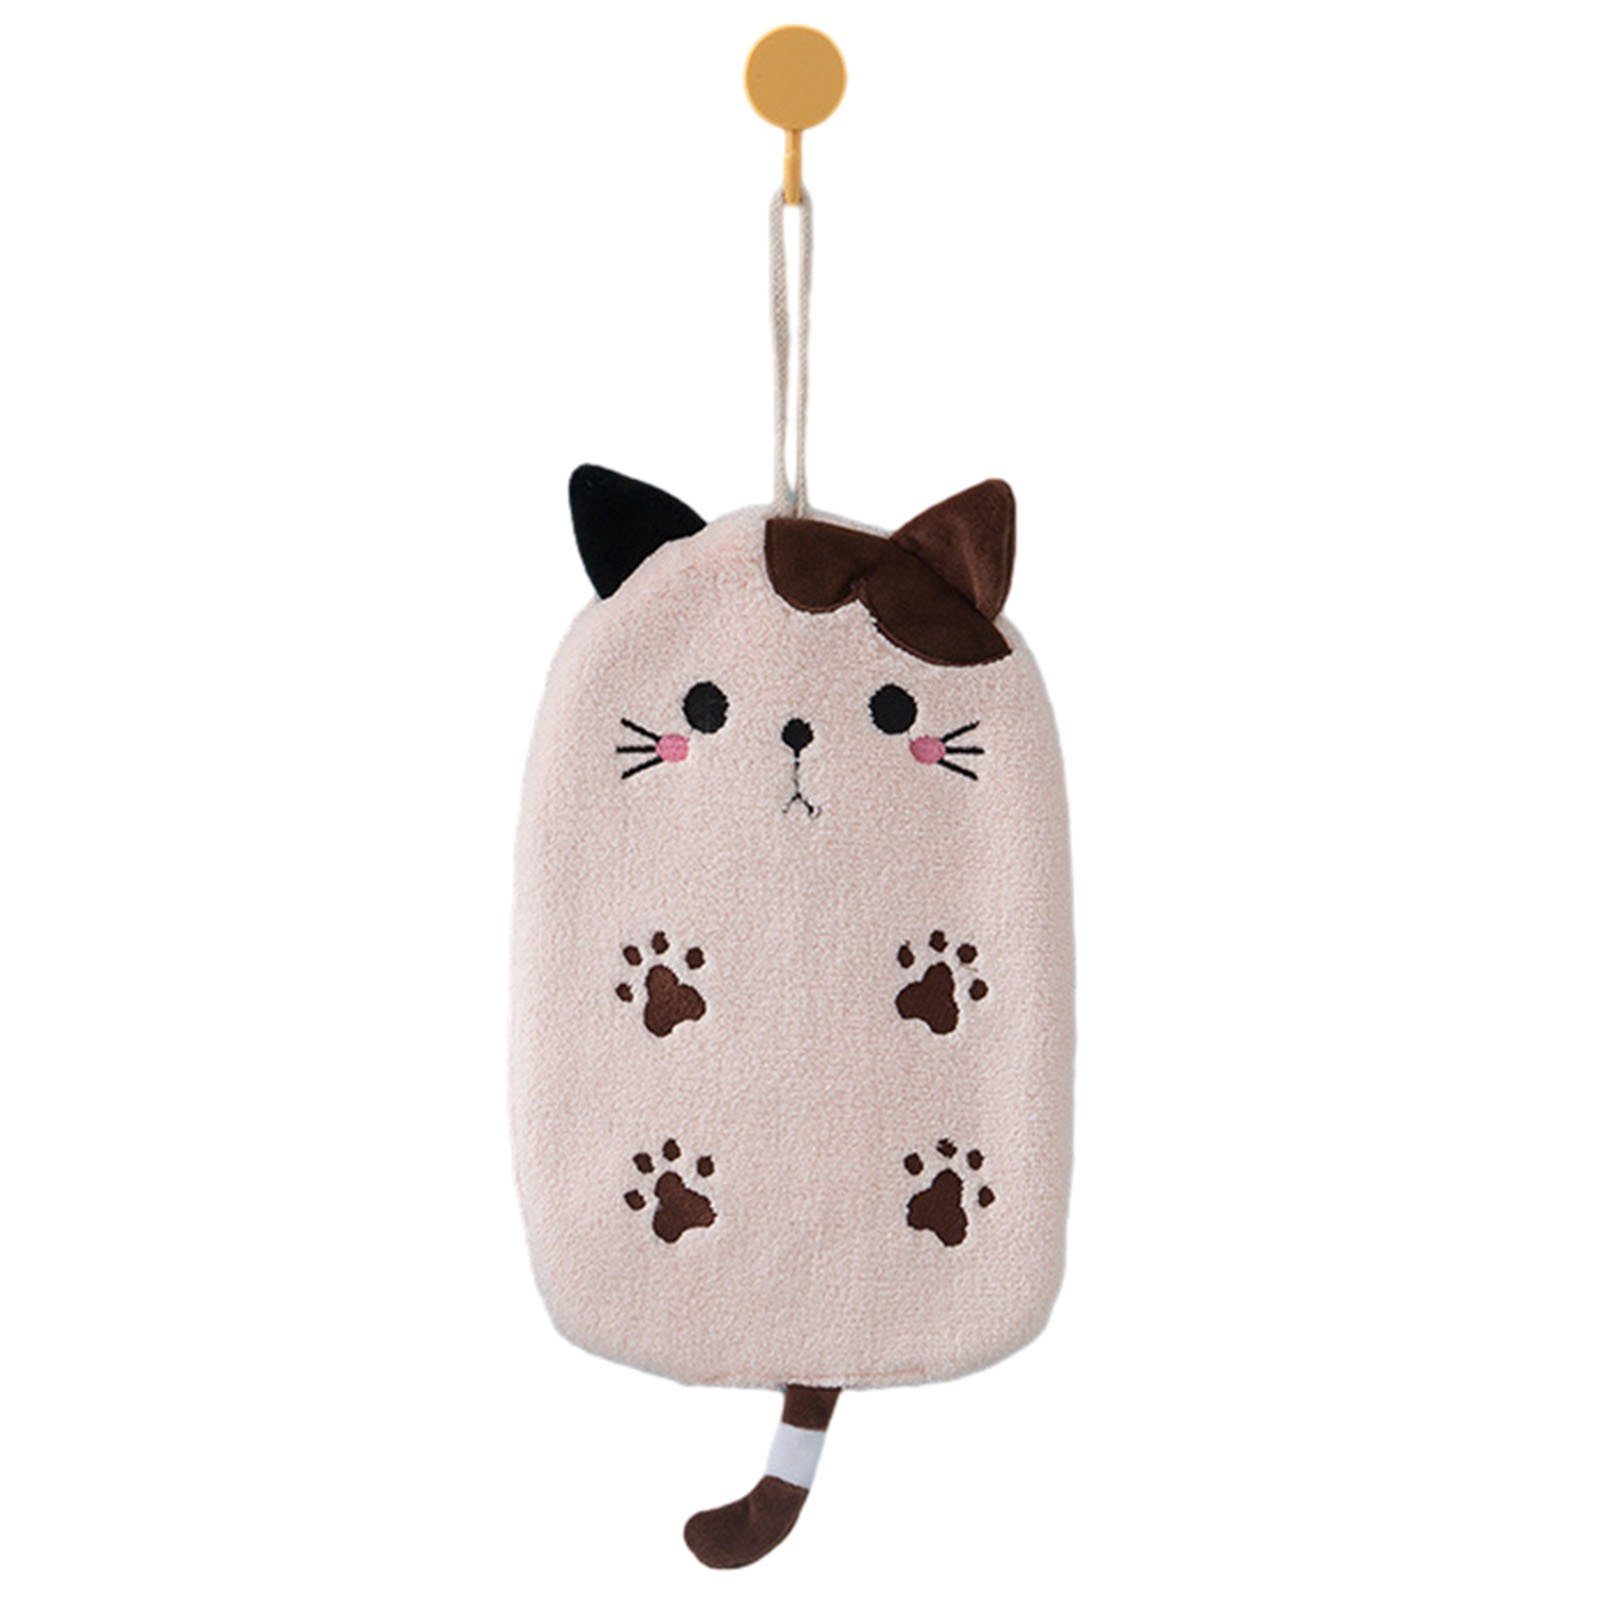 Blusmart Lichtecht Katzenform Hübsches In Zum Aufhängen, Mikrofaser-Handtuch Handtuch Set pink